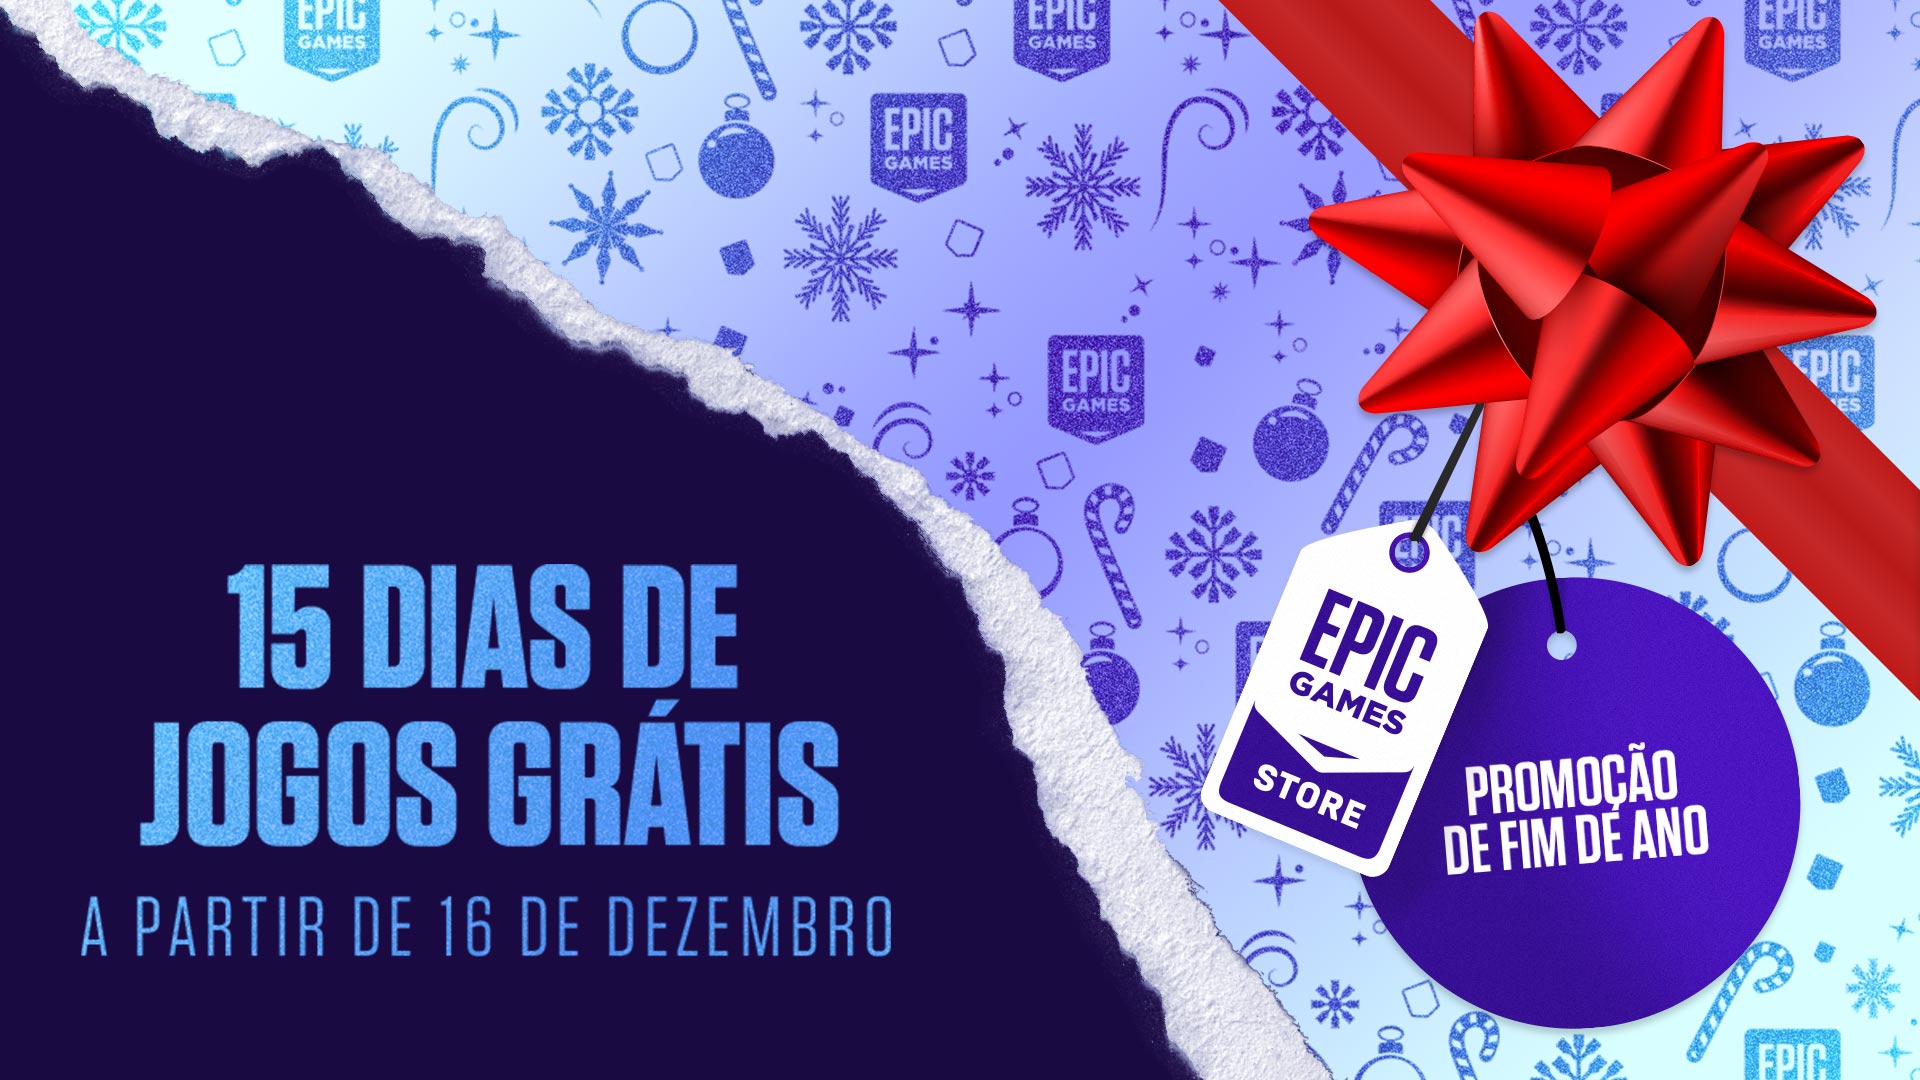 Epic Games Brasil on Instagram: ❄🎁 EM BREVE 🎁❄ A Promoção de Fim de Ano  da Epic volta no dia 17 de dezembro. Desembrulhe ótimas ofertas e se  prepare para 15 dias de JOGOS GRÁTIS!